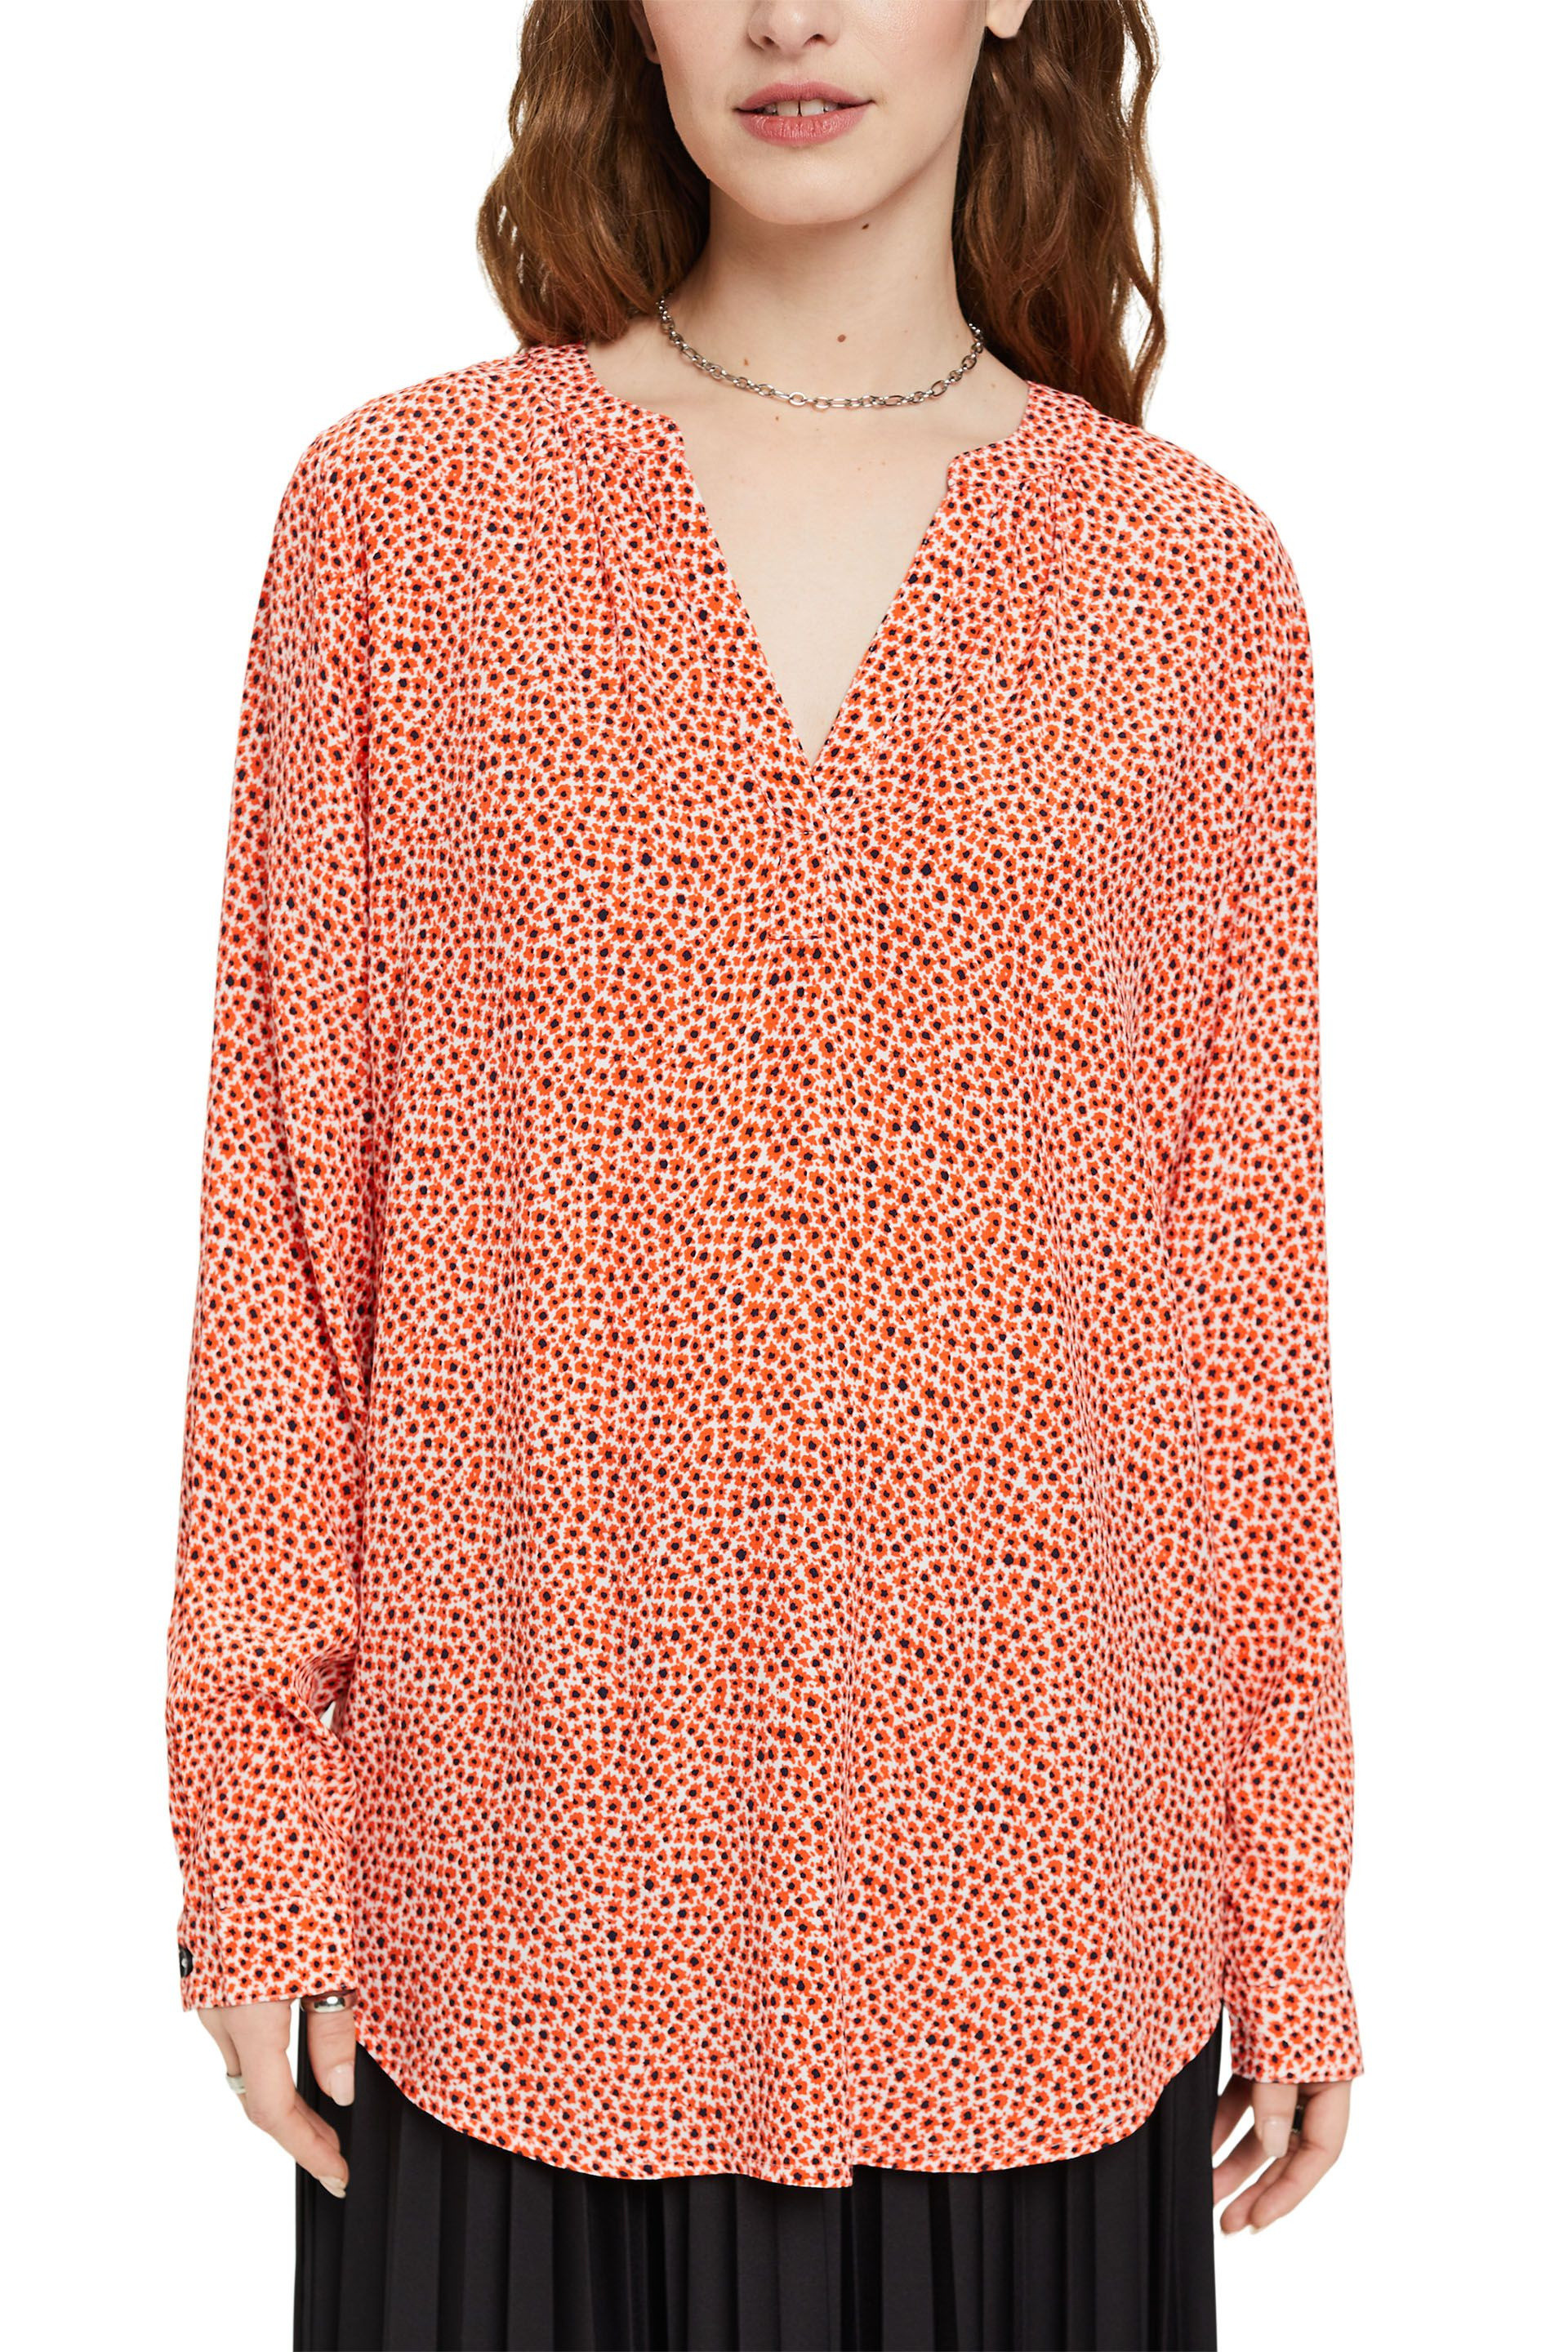 Esprit - Camicia floreale con scollo a V, Arancione, large image number 2